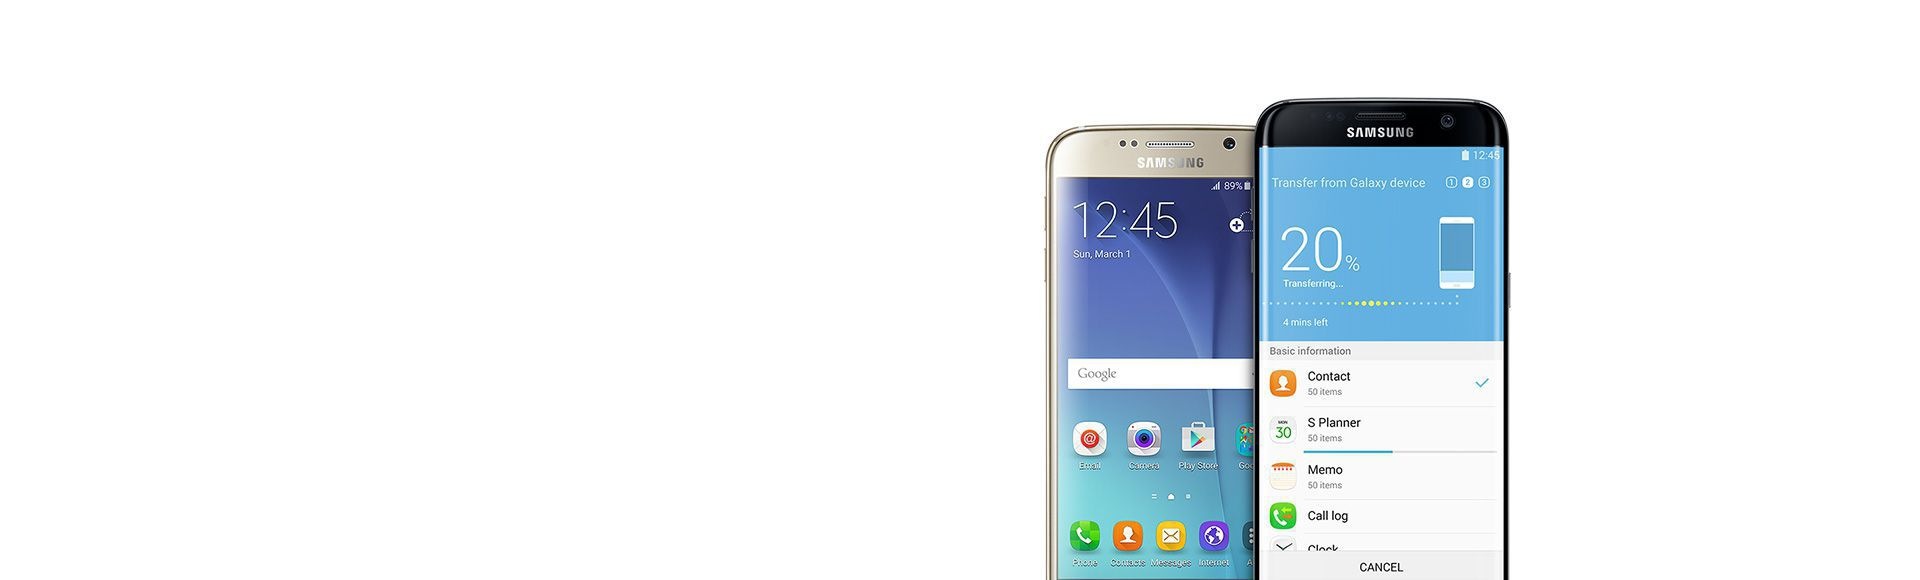 انتقال محتوا از Galaxy Note5 به Galaxy S7 edge از طریق برنامه «اسمارت سوییچ»